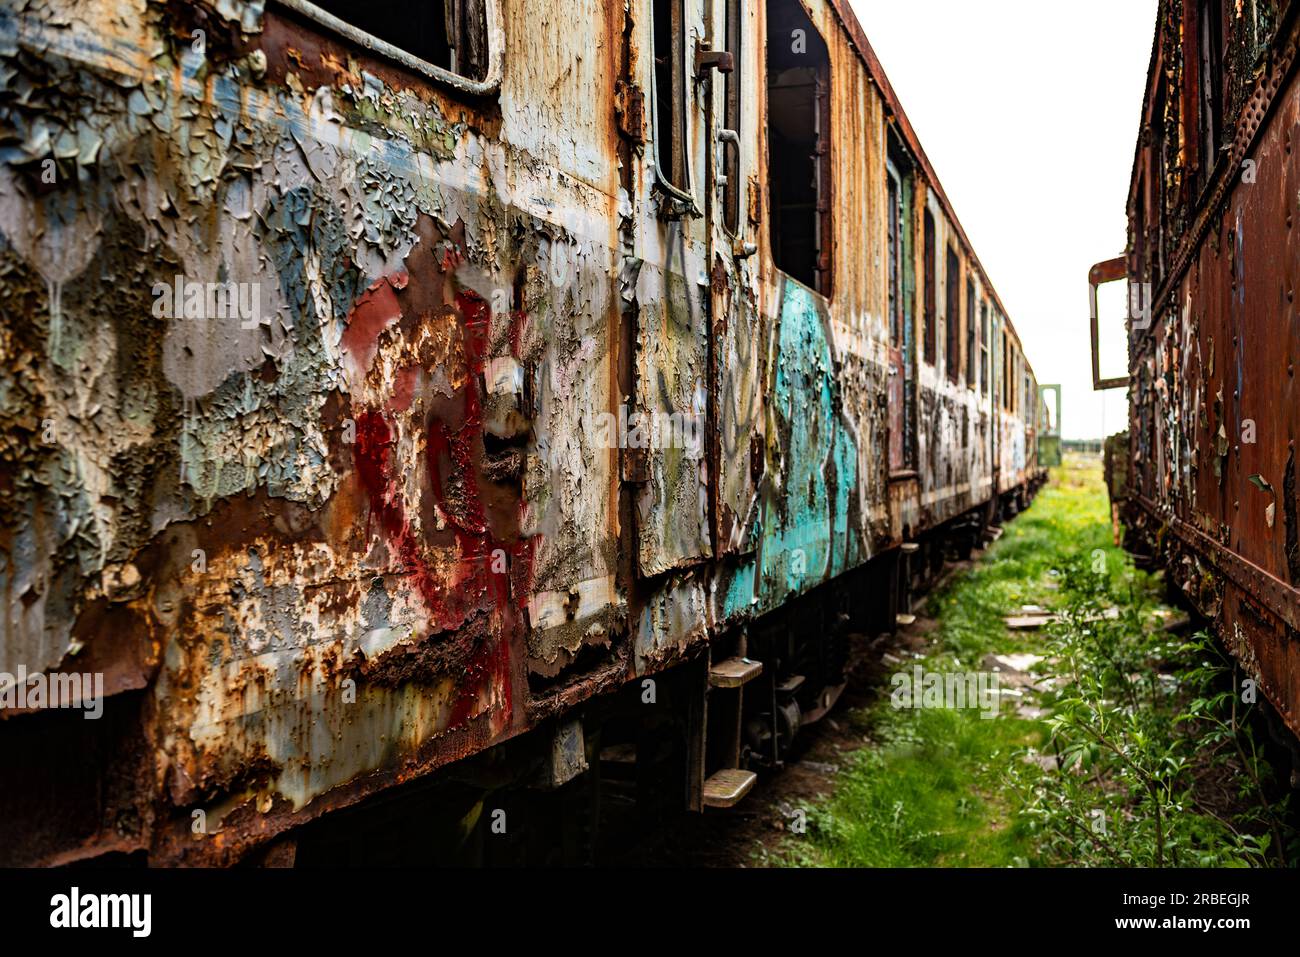 Vue perpective de vieux trains et wagons endommagés, fond vintage très faible profondeur de champ Banque D'Images